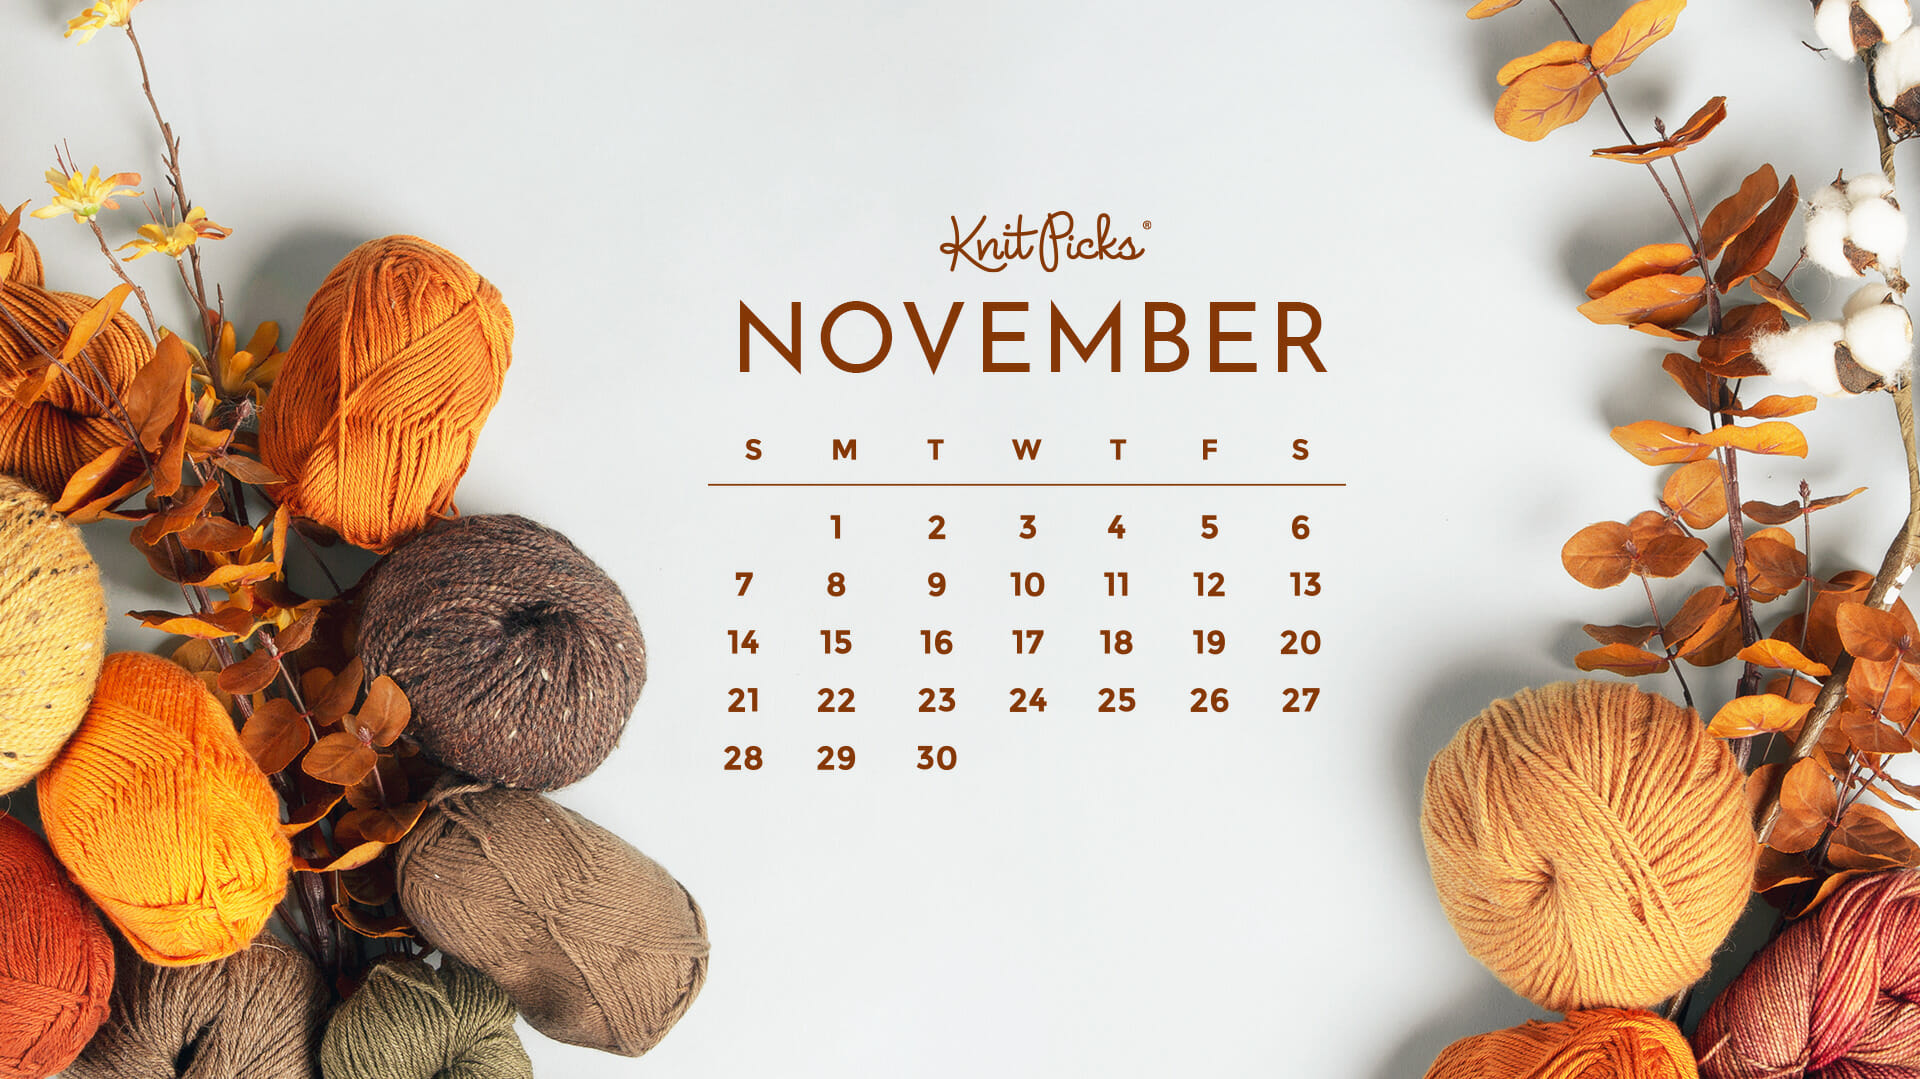 Lịch tháng 11 tải về miễn phí: Sắp đến tháng 11 rồi, tại sao không sở hữu ngay một cái lịch xinh đẹp để lên kế hoạch cho những ngày đầu năm mới. Tải xuống miễn phí ngay bộ lịch tháng 11 với thiết kế độc đáo và chắc chắn sẽ làm bạn hài lòng.